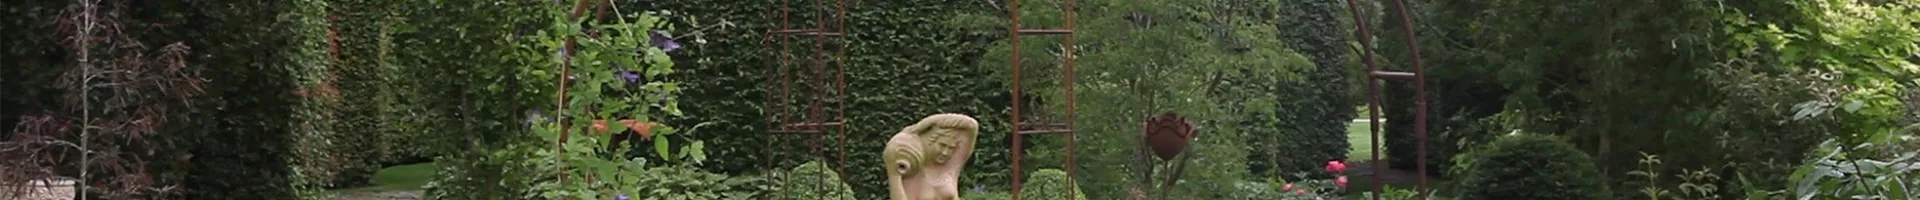 Gartengestaltung - Romantischer Garten (thumbnail).jpg